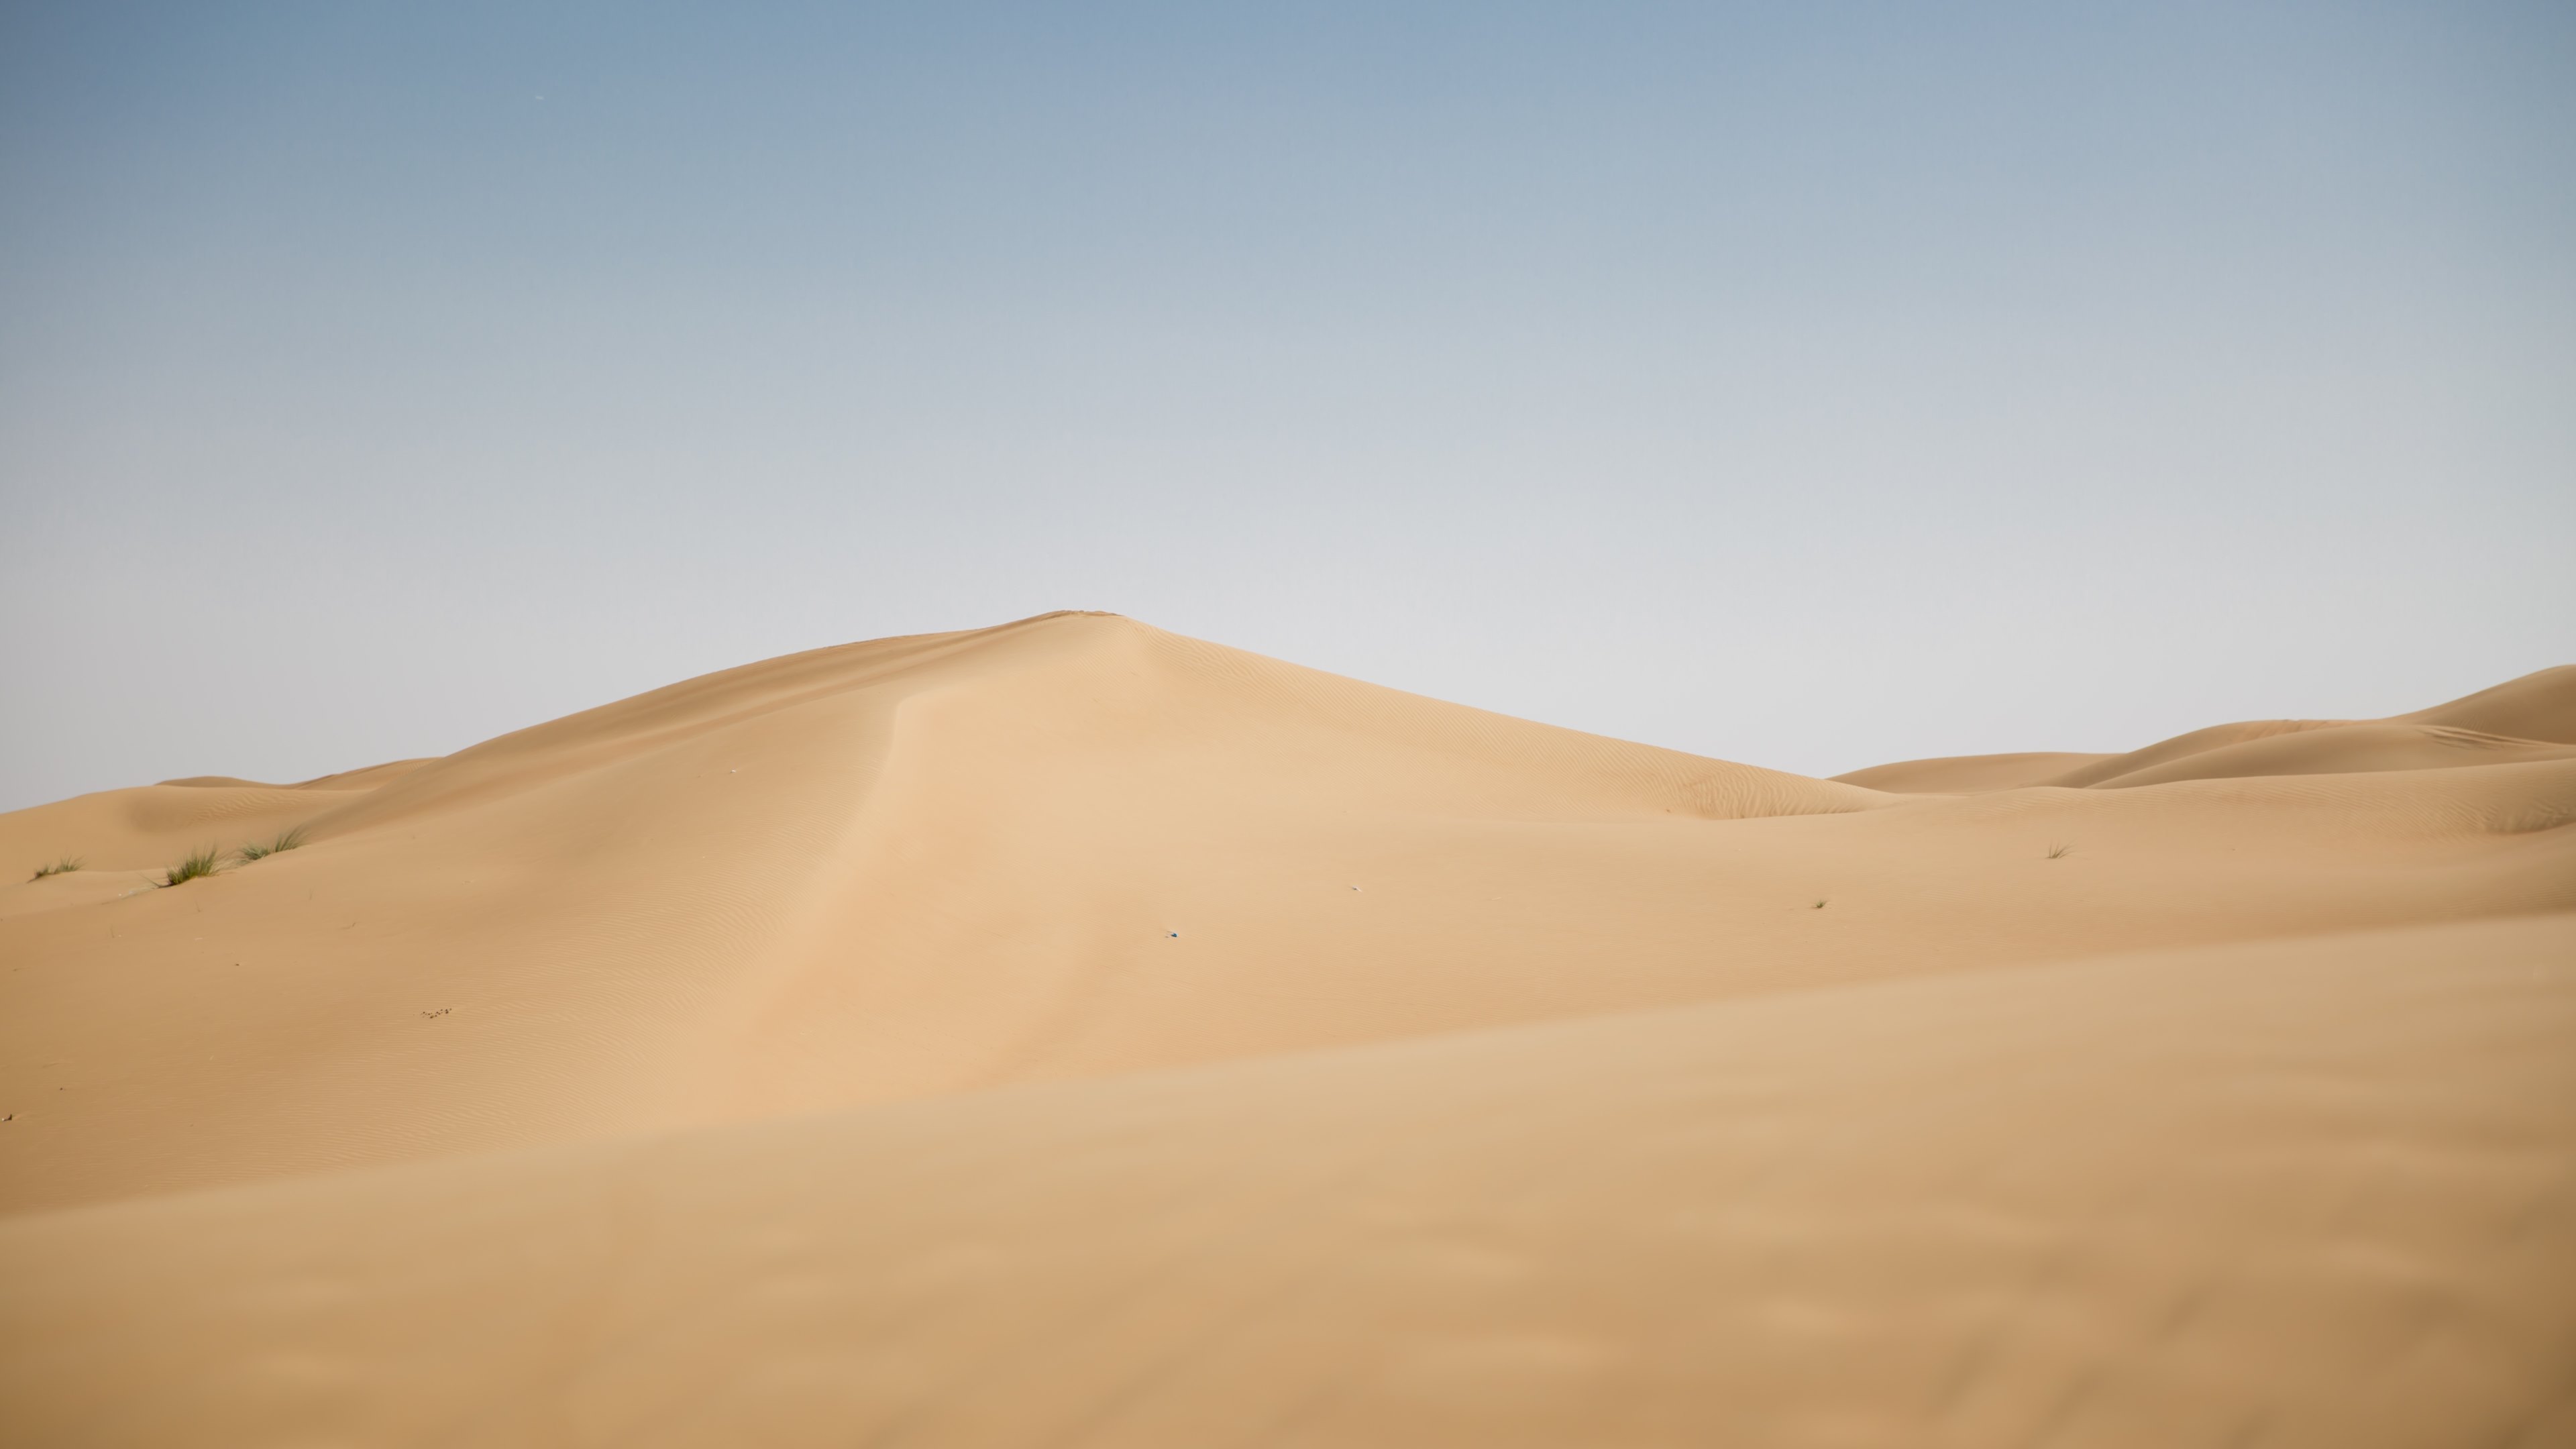 Скачать обои Аравийская Пустыня на телефон бесплатно